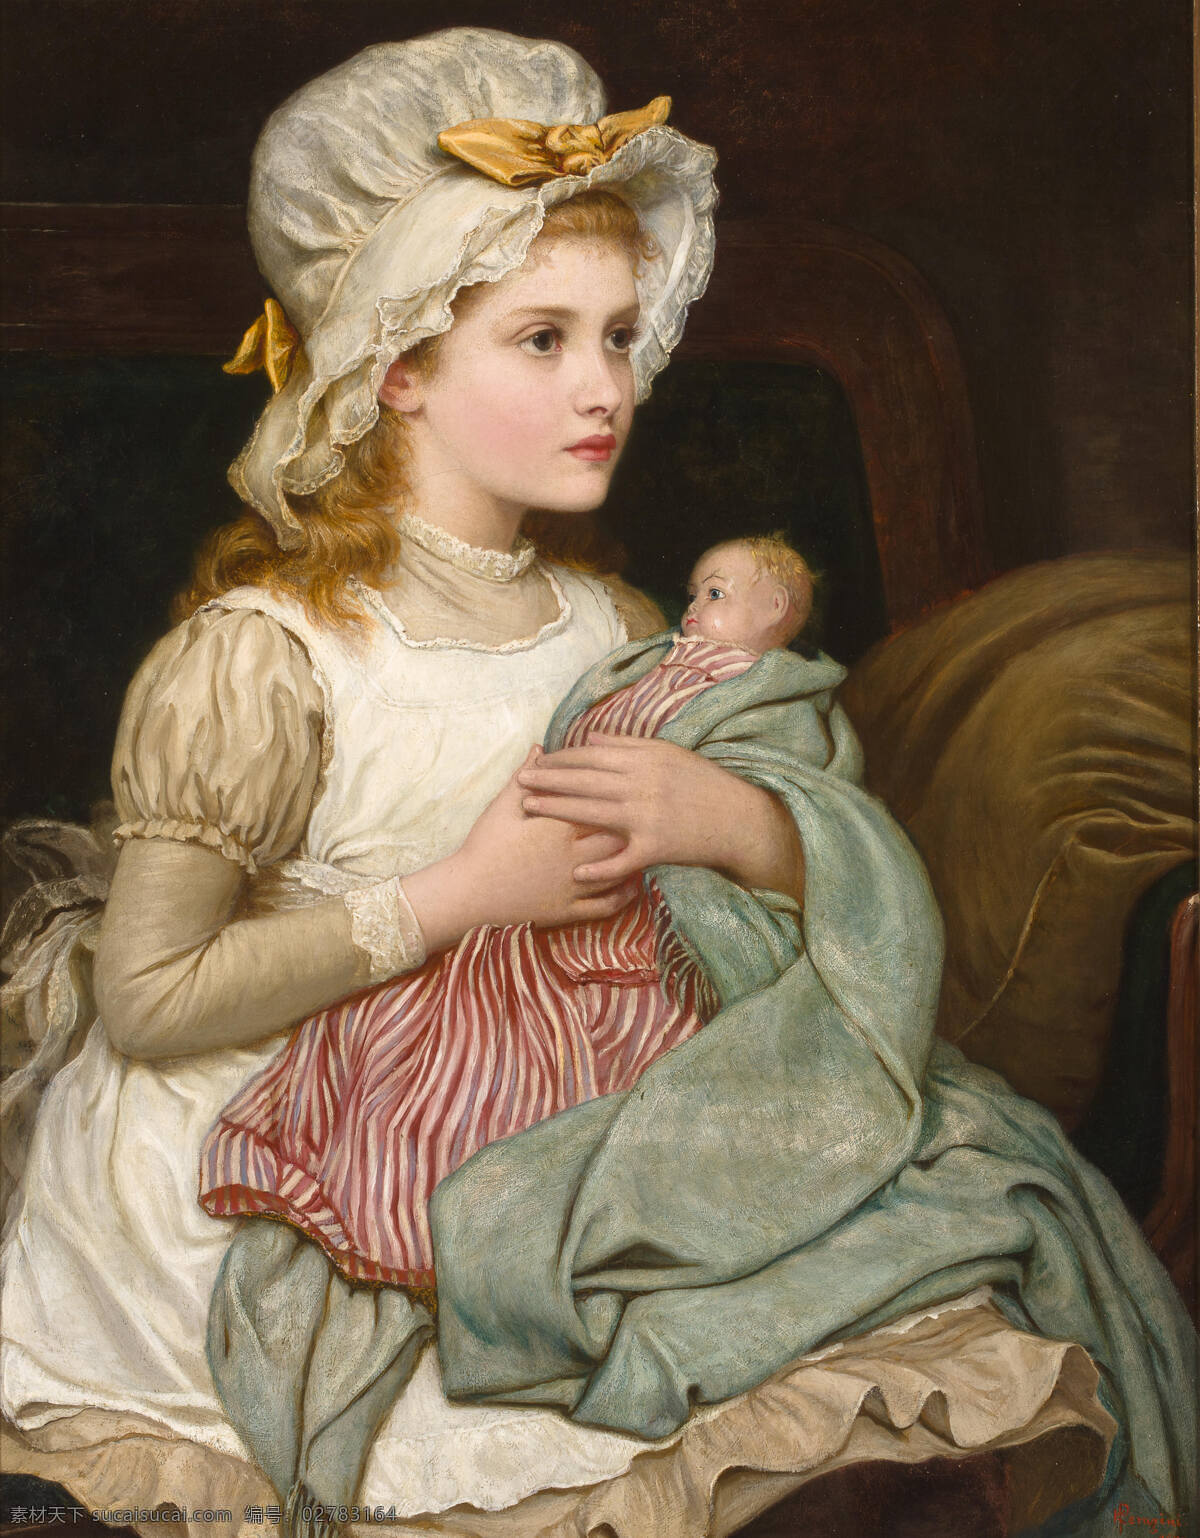 女孩与娃娃 小女孩儿 抱着娃娃 坐像 贵族之家 19世纪油画 油画 绘画书法 文化艺术